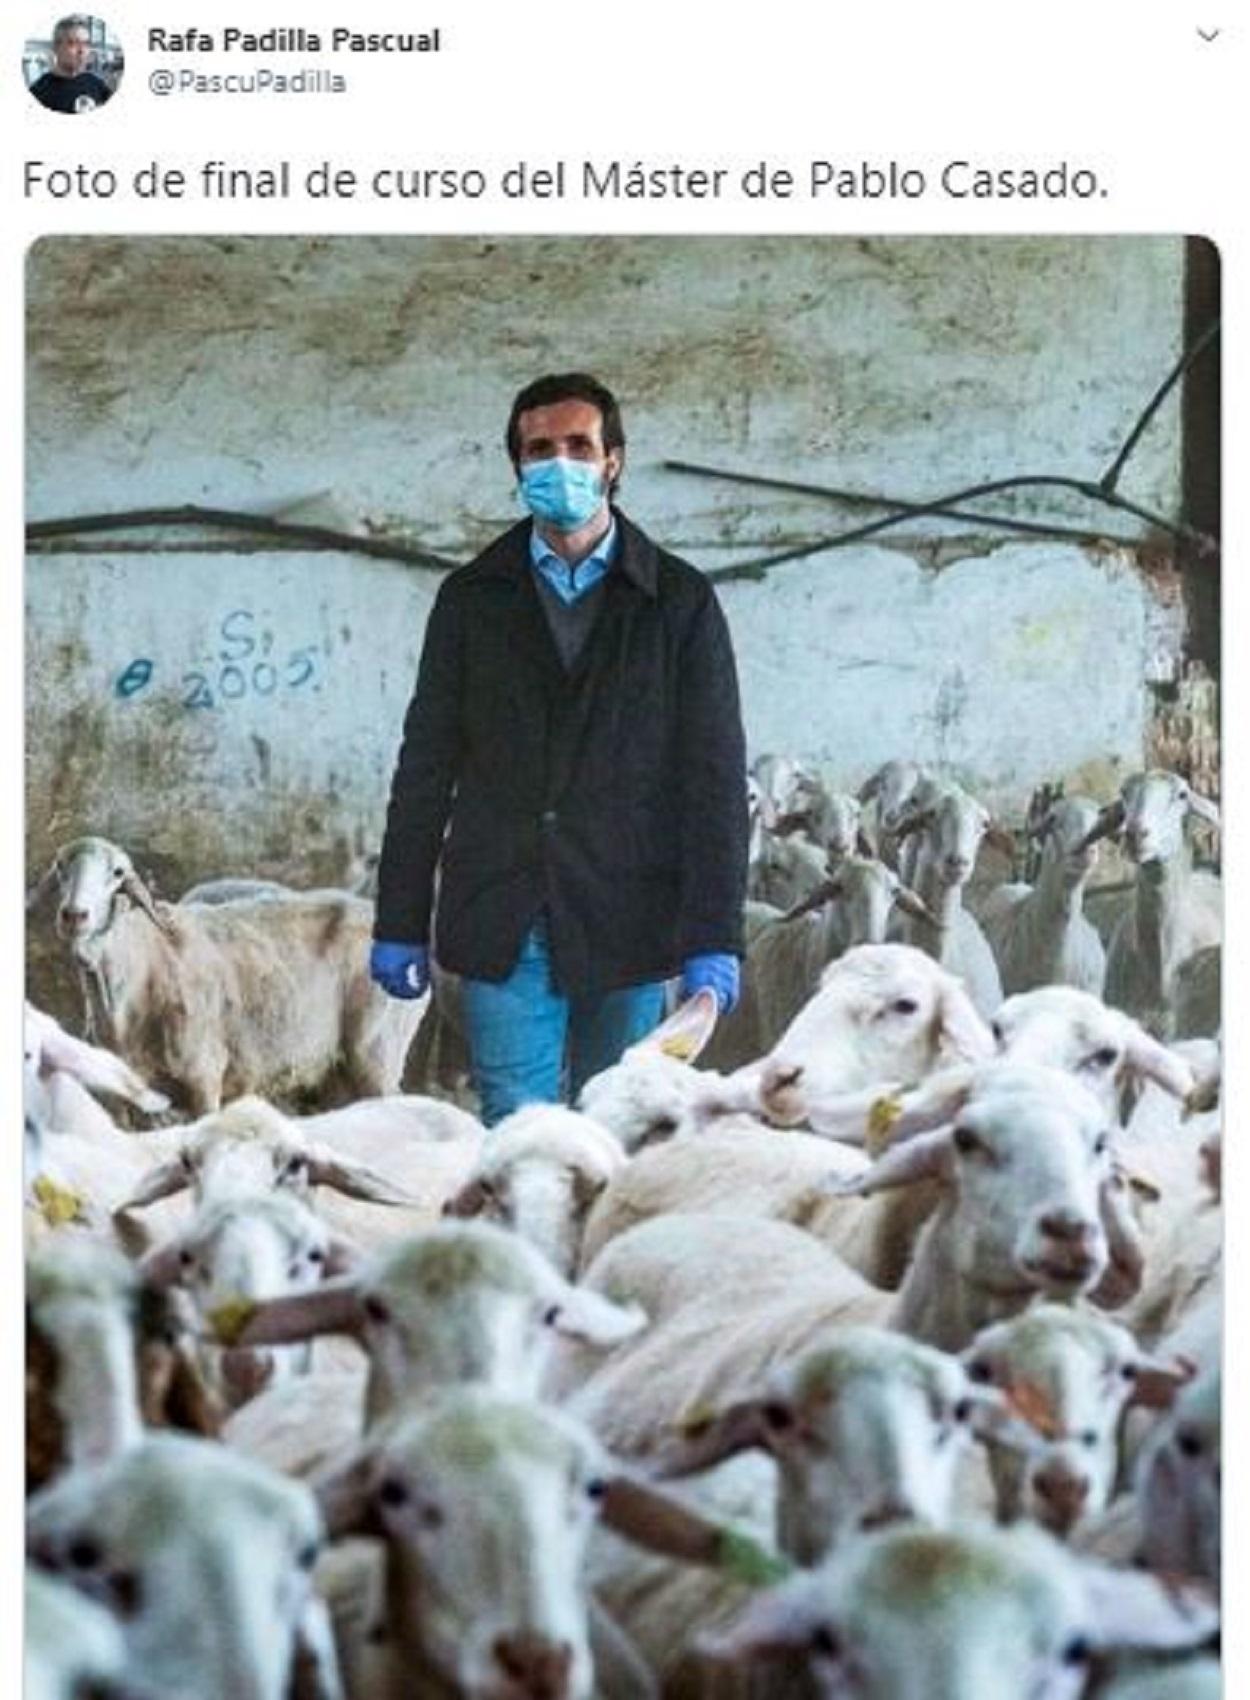 La foto de Pablo Casado posando con ovejas ha generado un aluvión de comentarios y críticas en Twitter